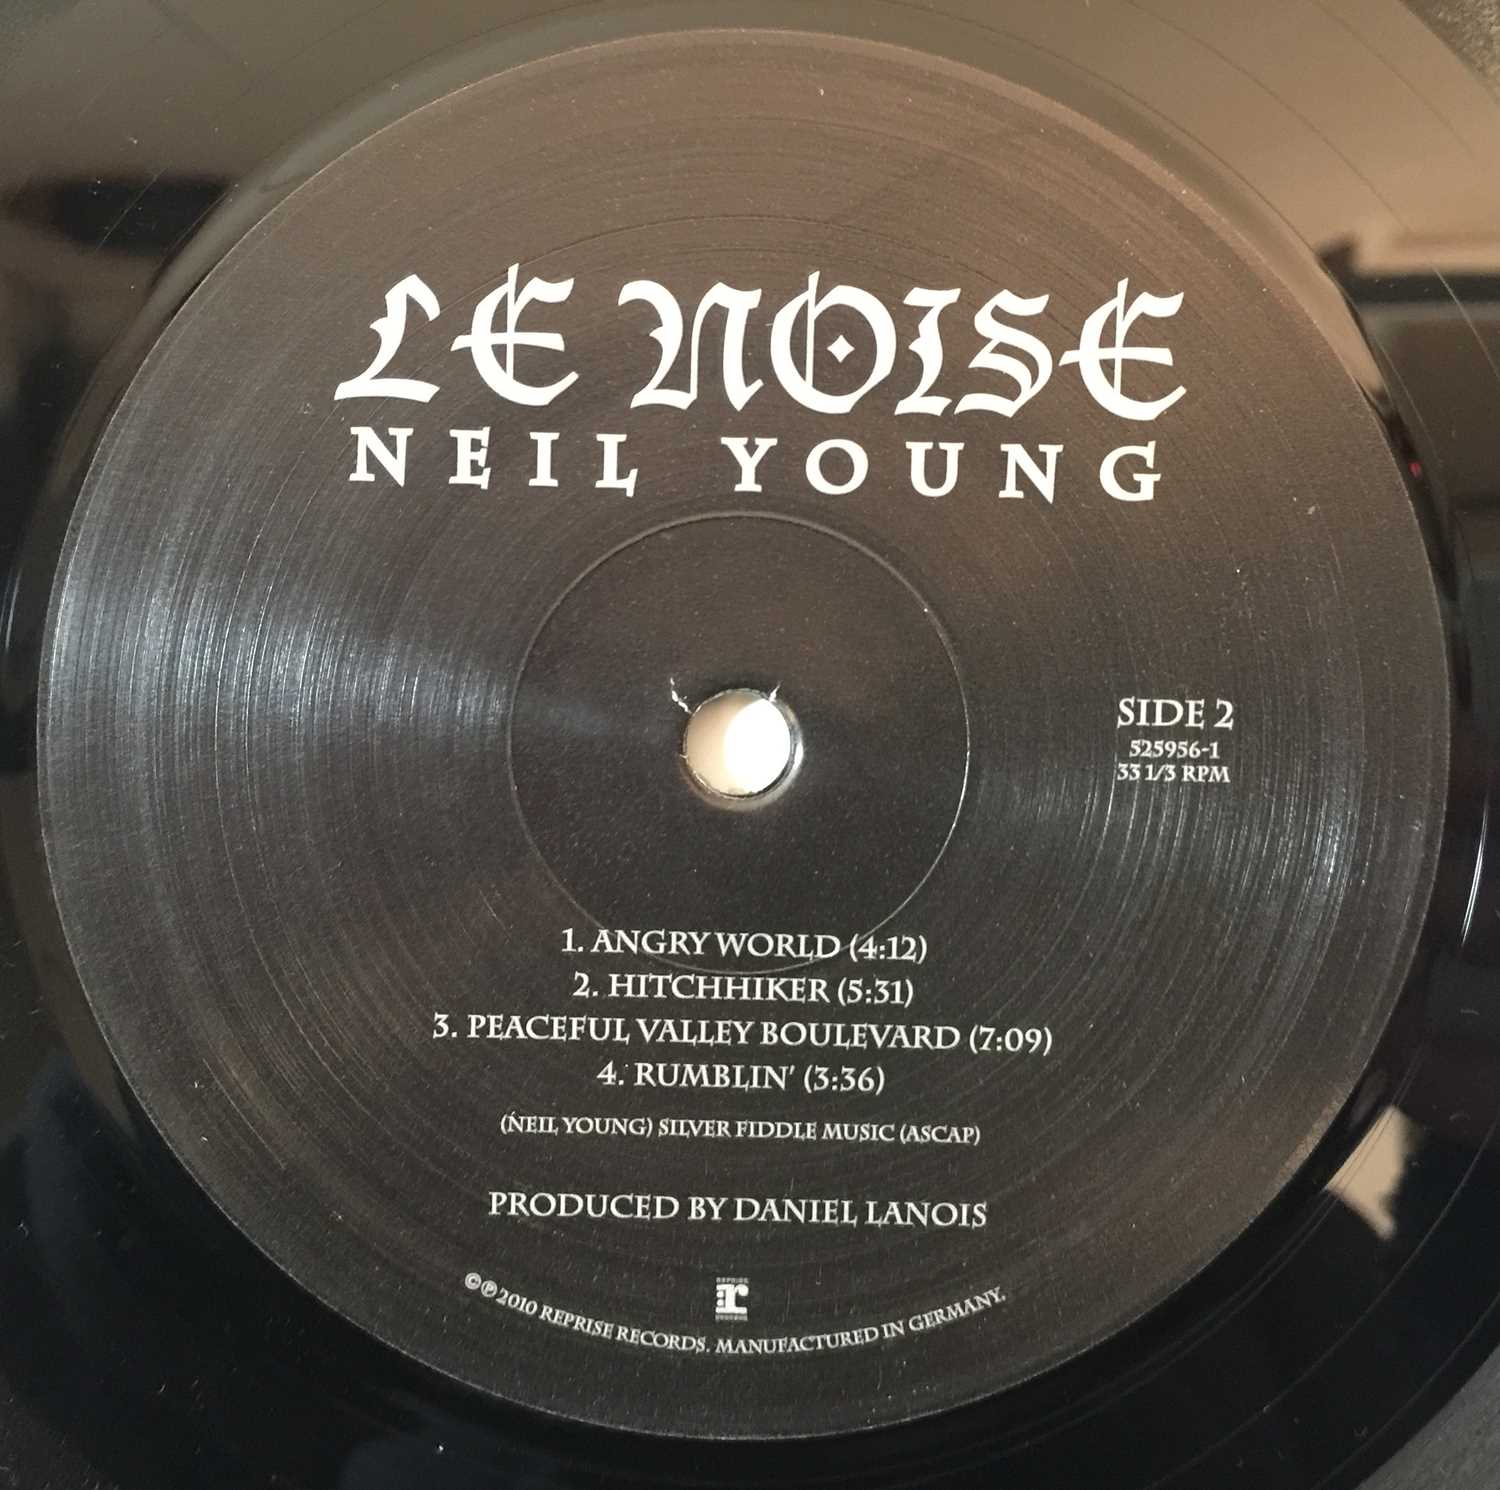 Lot 178 NEIL YOUNG LE NOISE LP (ORIGINAL 2010